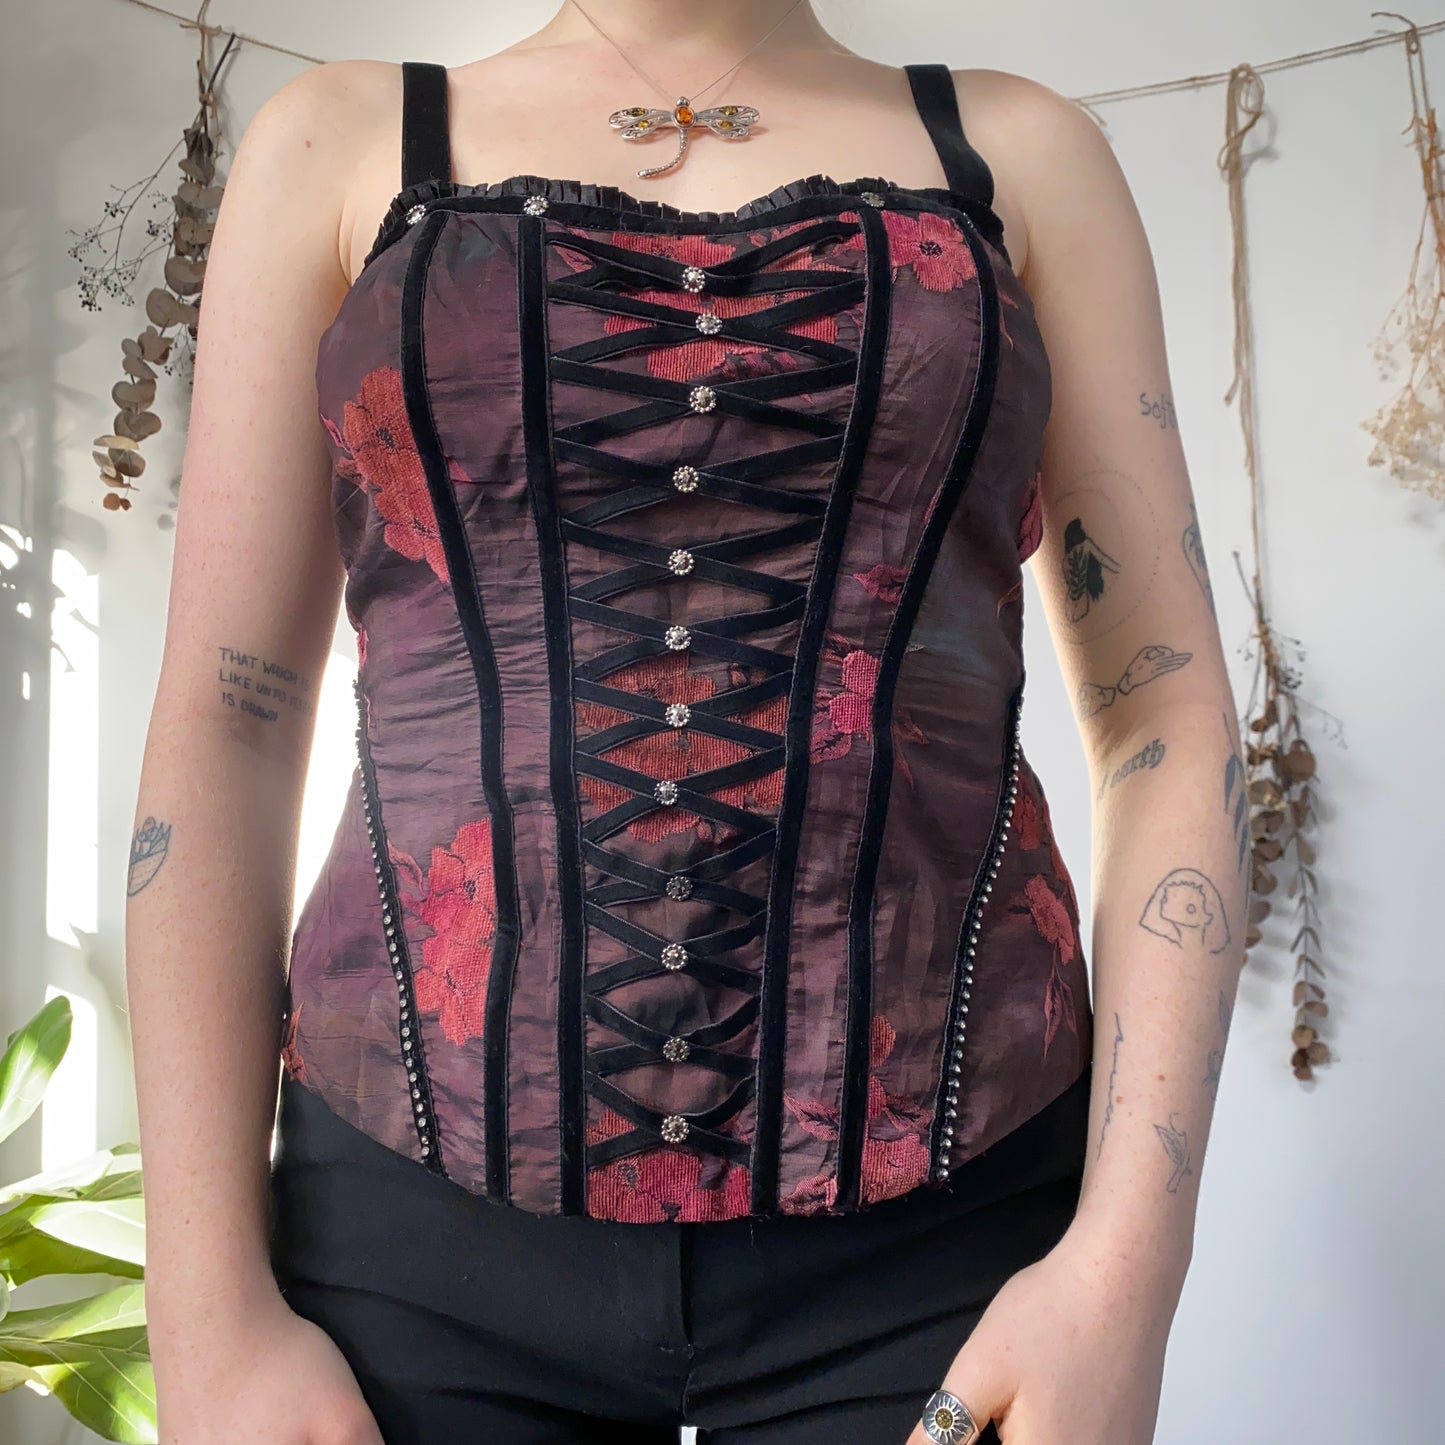 Floral corset top - size M/L